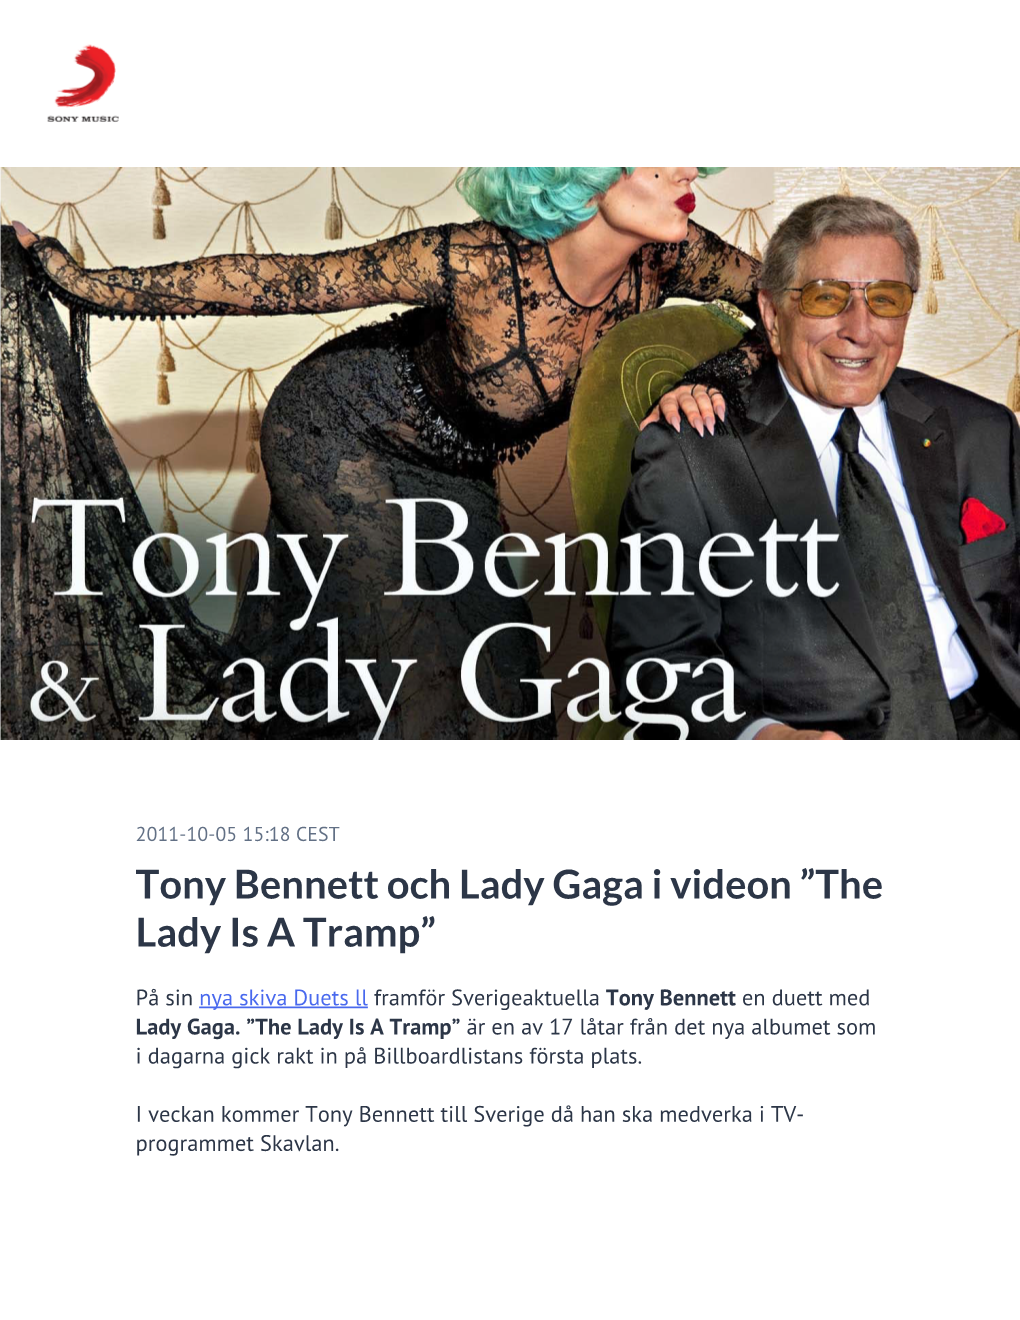 Tony Bennett Och Lady Gaga I Videon ”The Lady Is a Tramp”